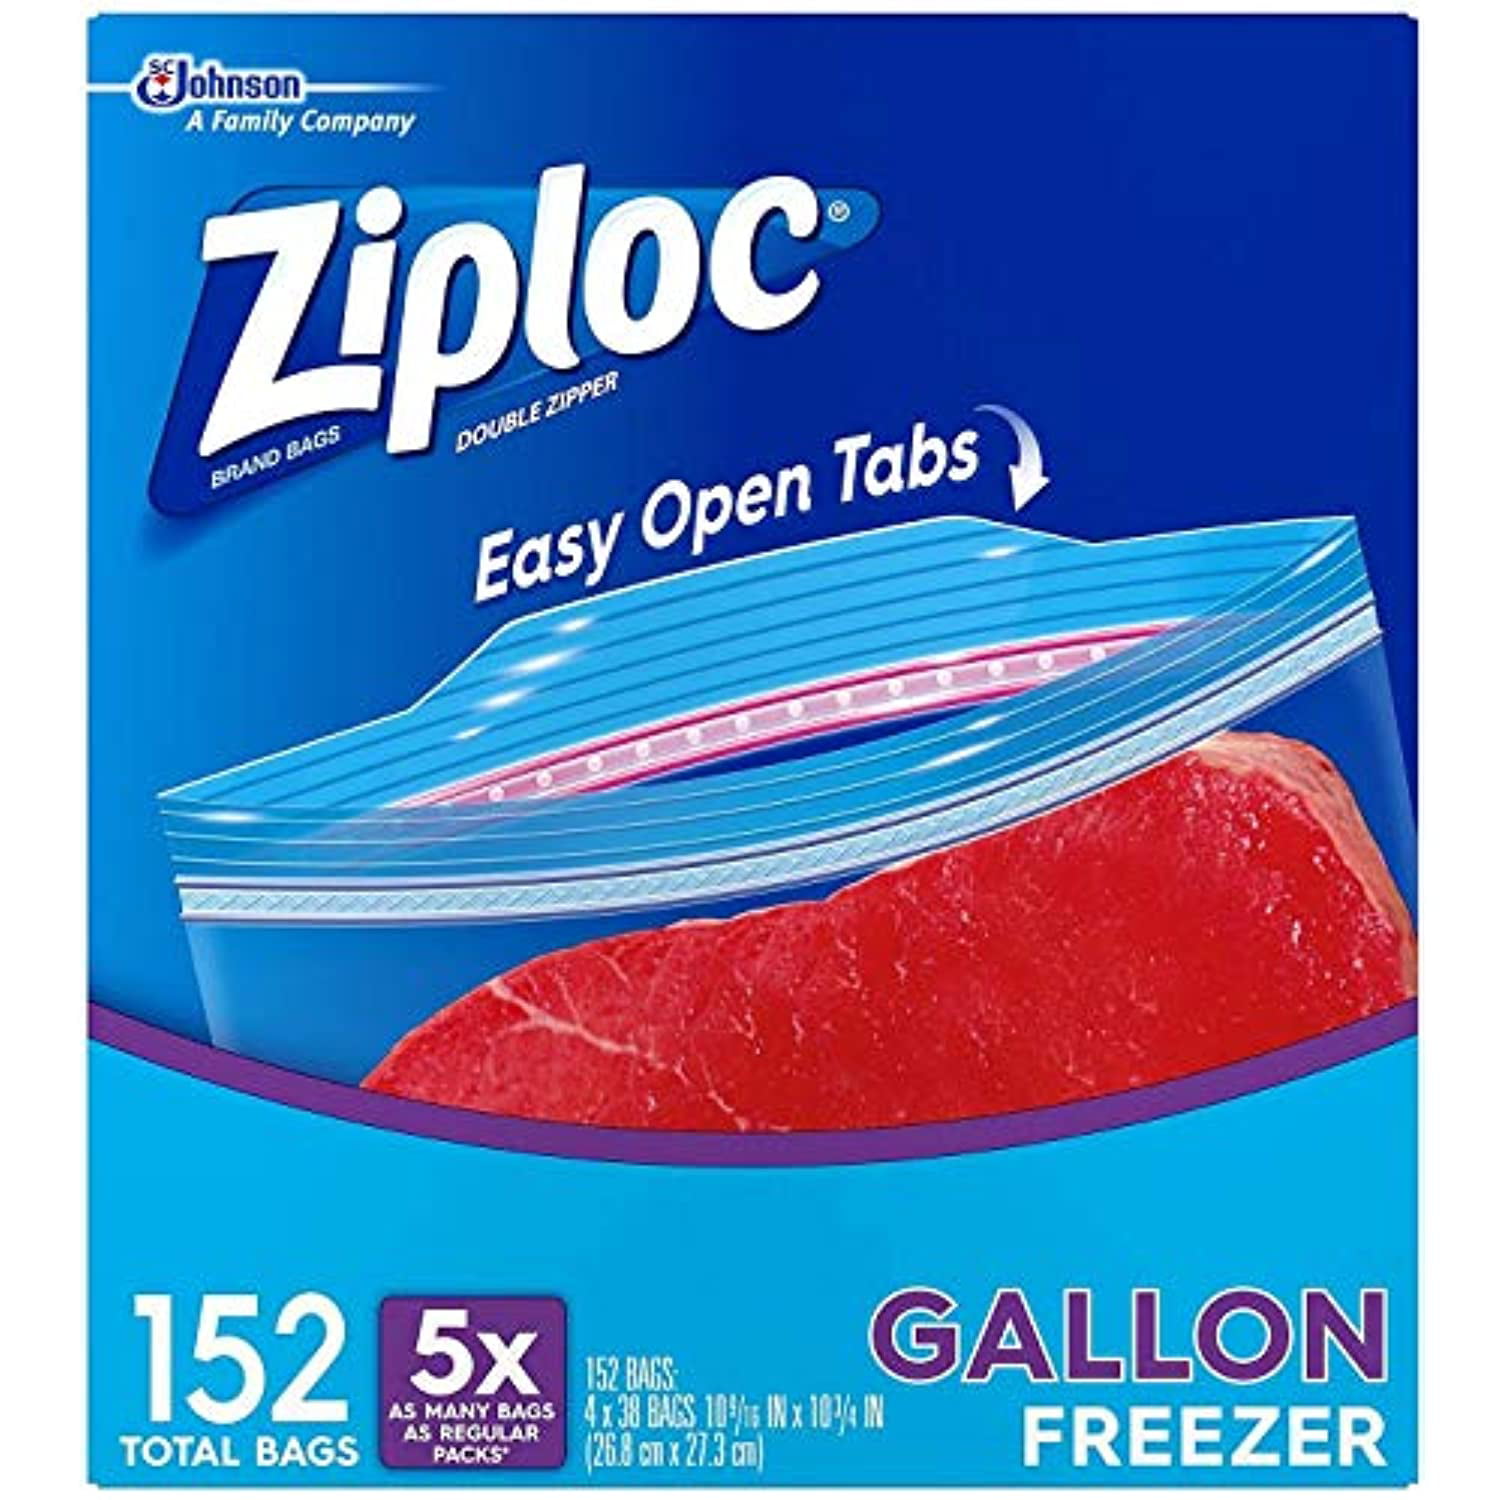 DIVERSEY ZIPLOC 2-GALLON STORAGE BAG 1.75 MIL (100/BAGS